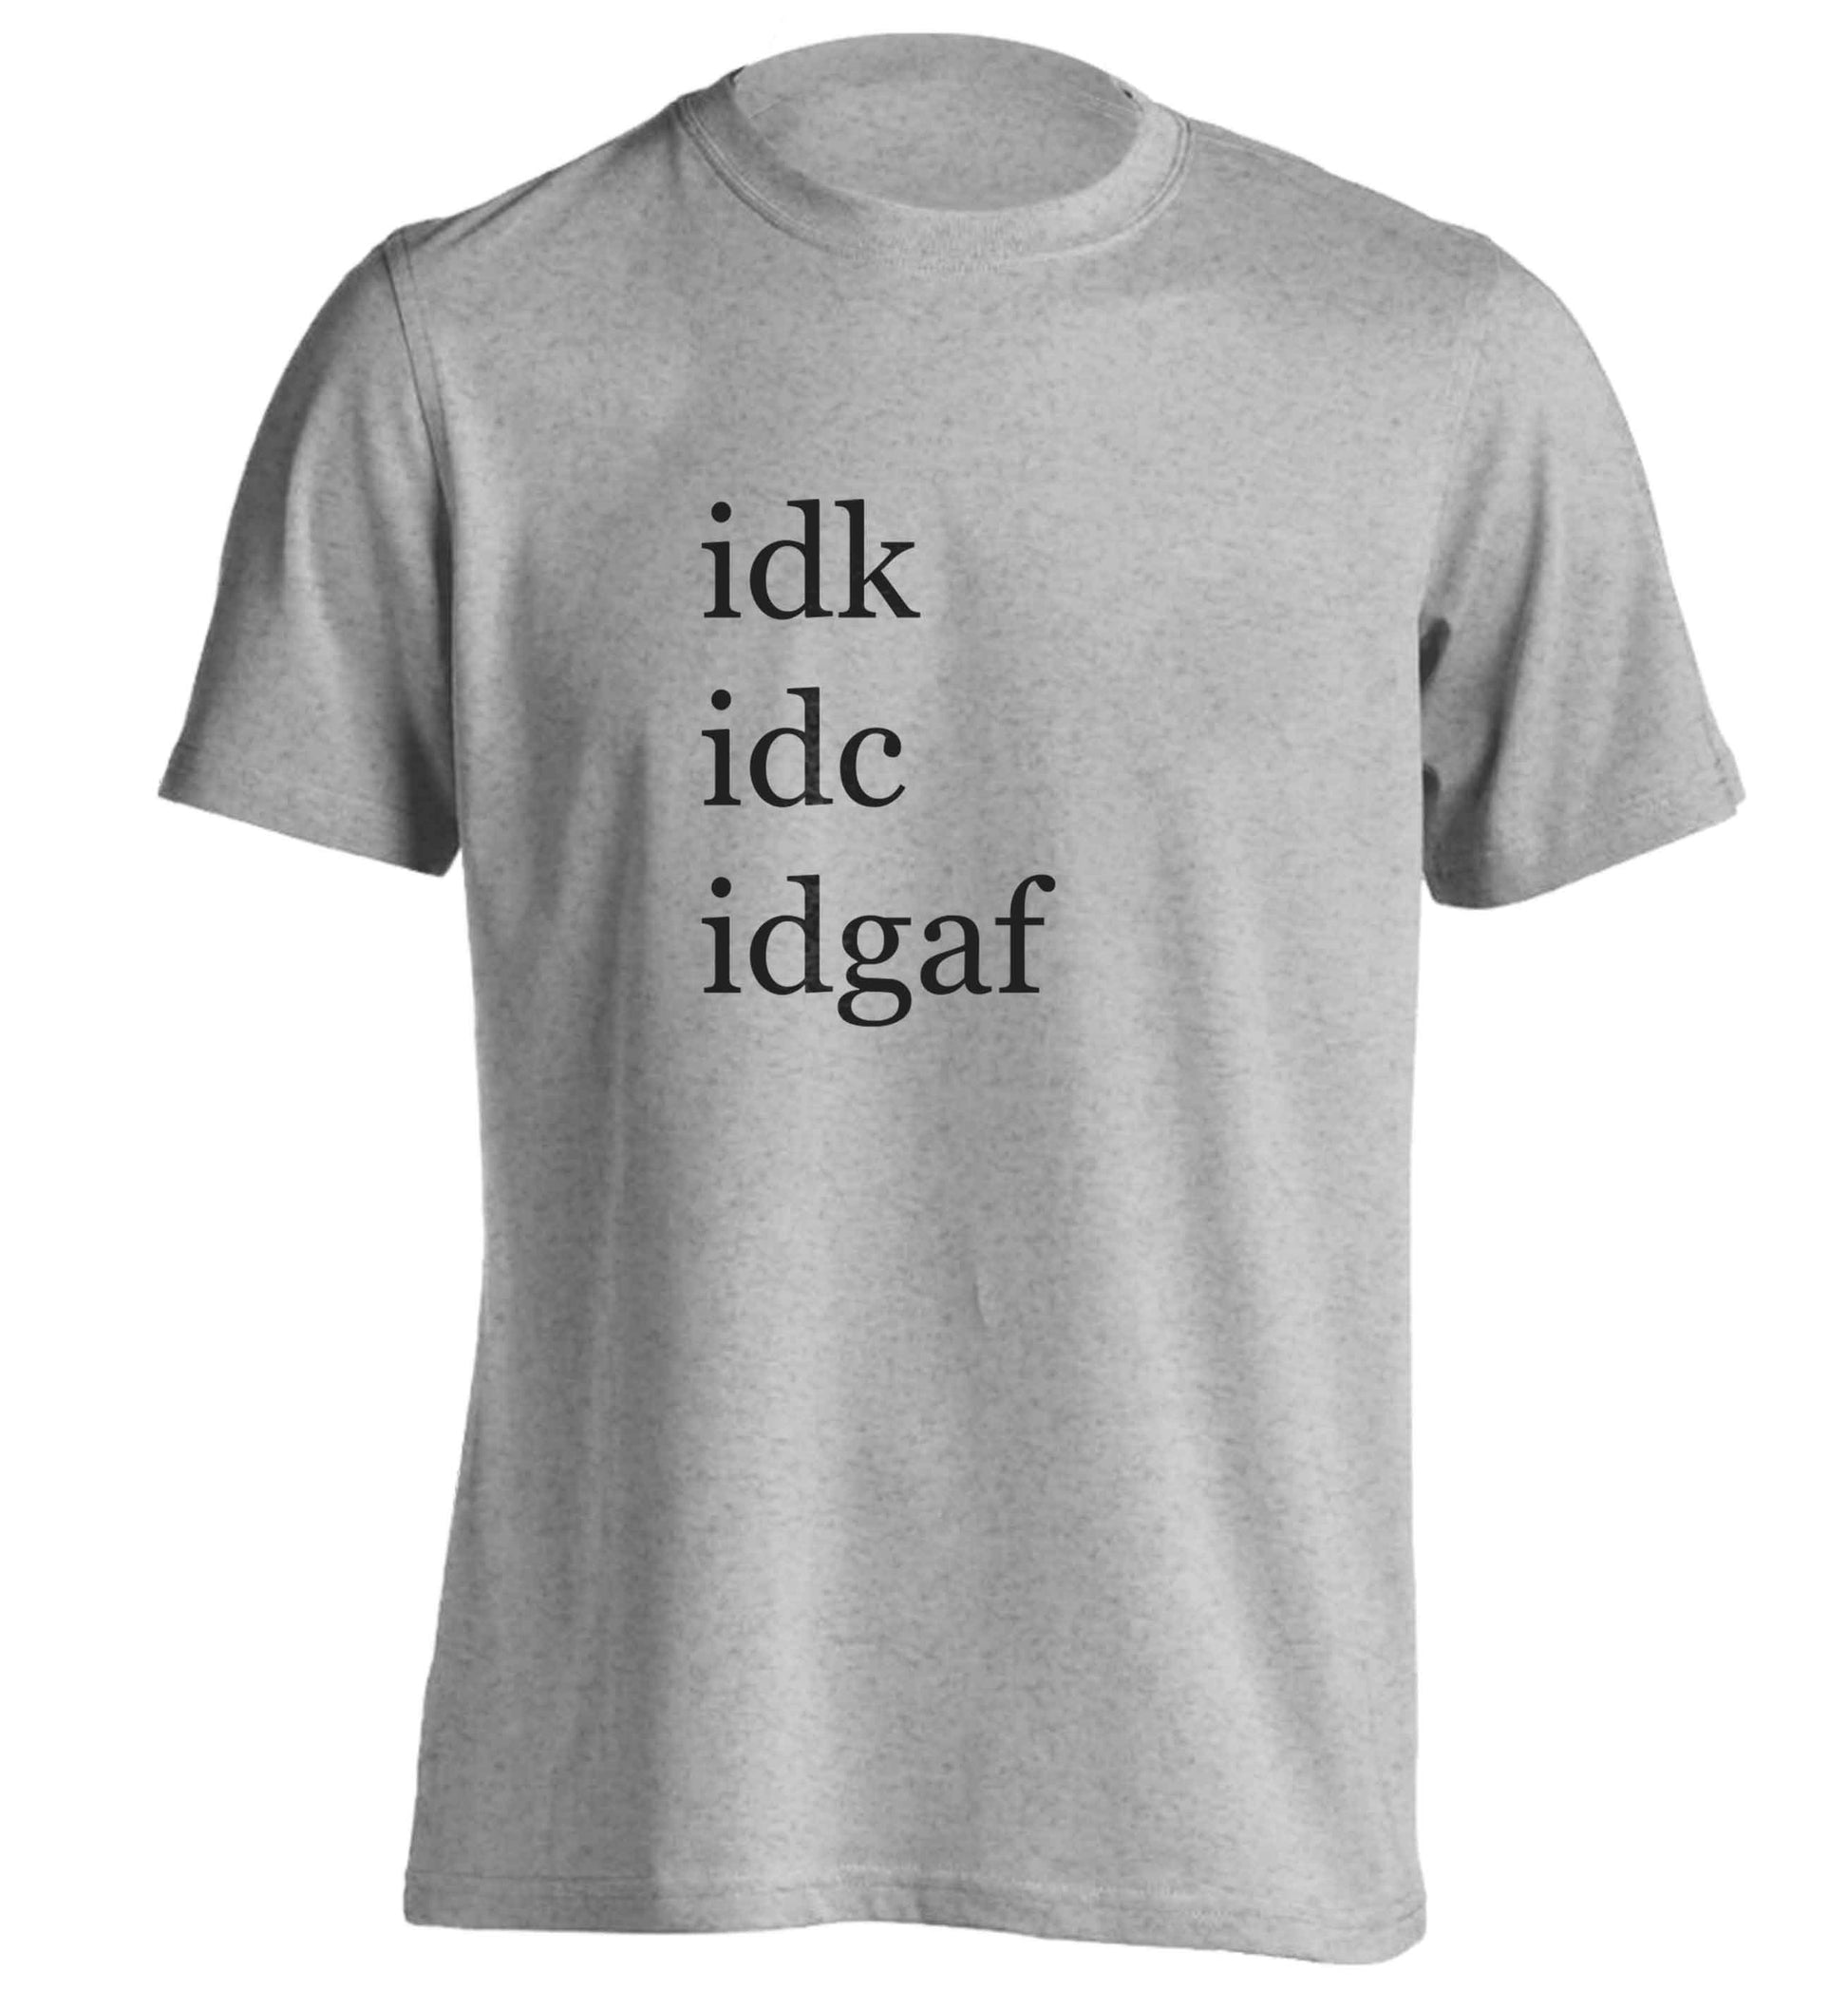 Idk Idc Idgaf adults unisex grey Tshirt 2XL